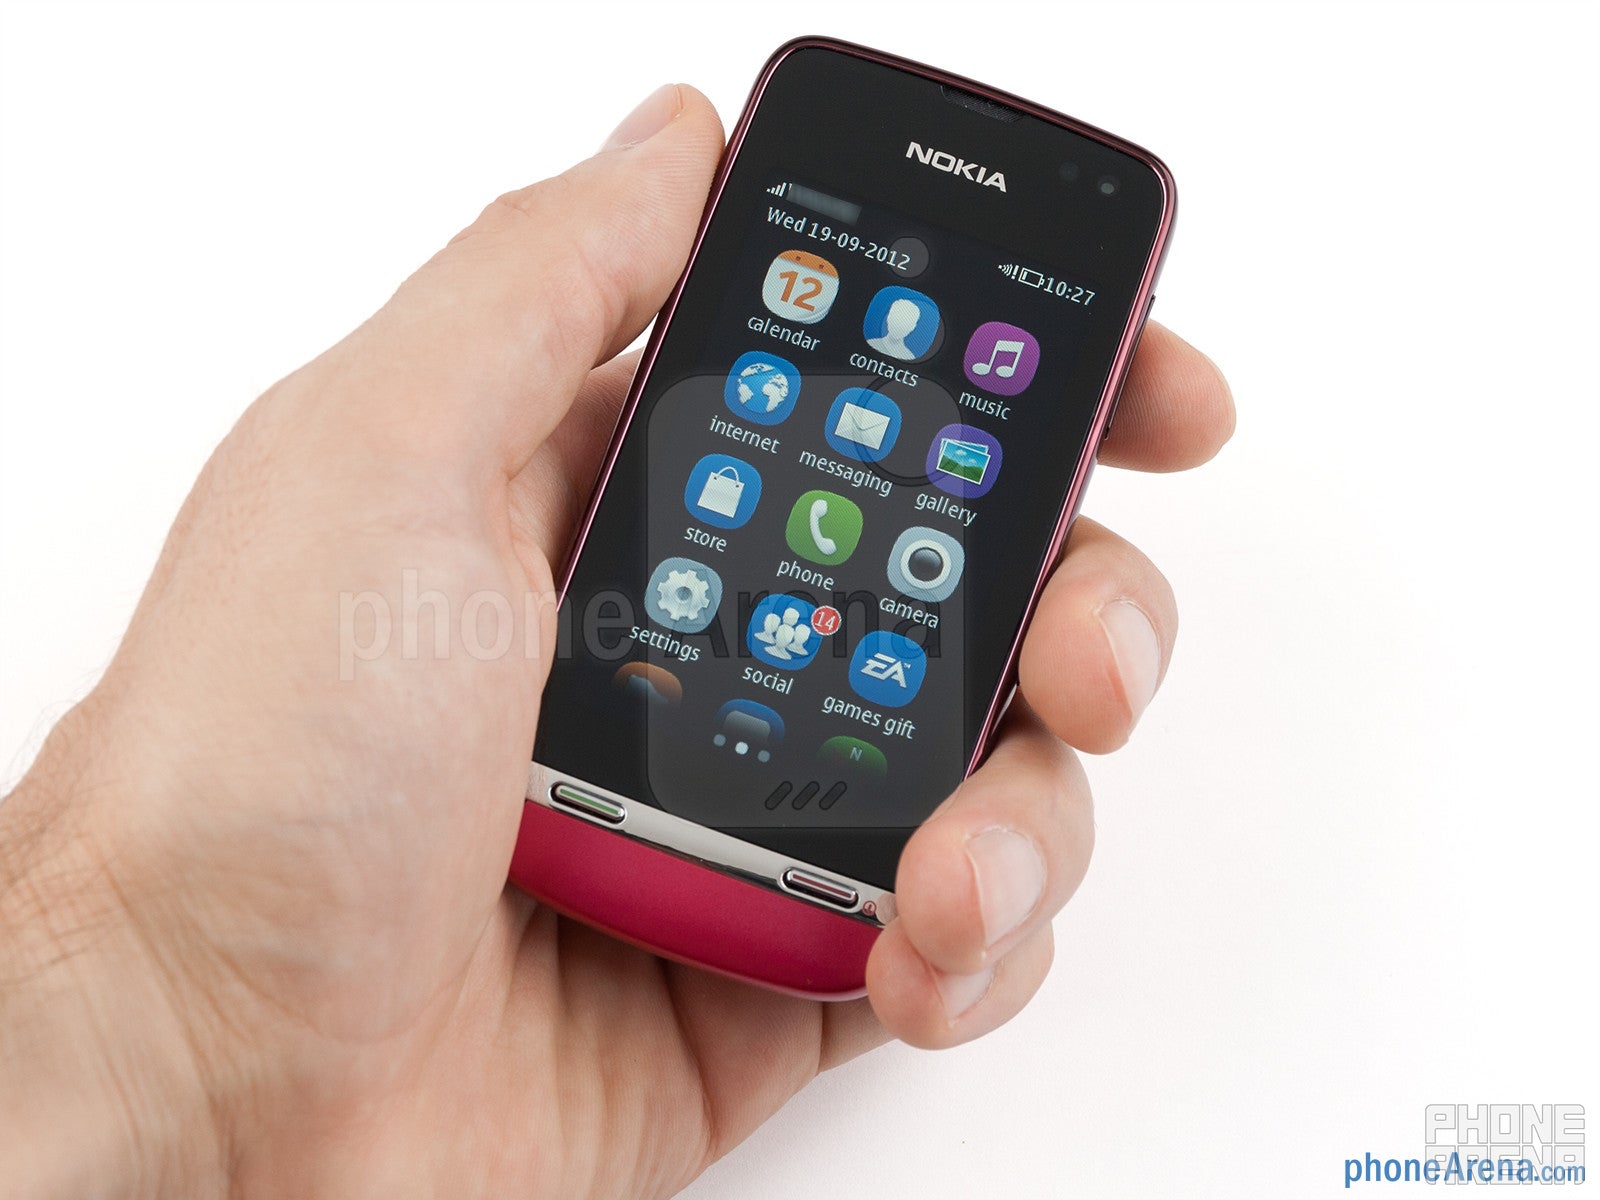 Nokia Asha 311 Review